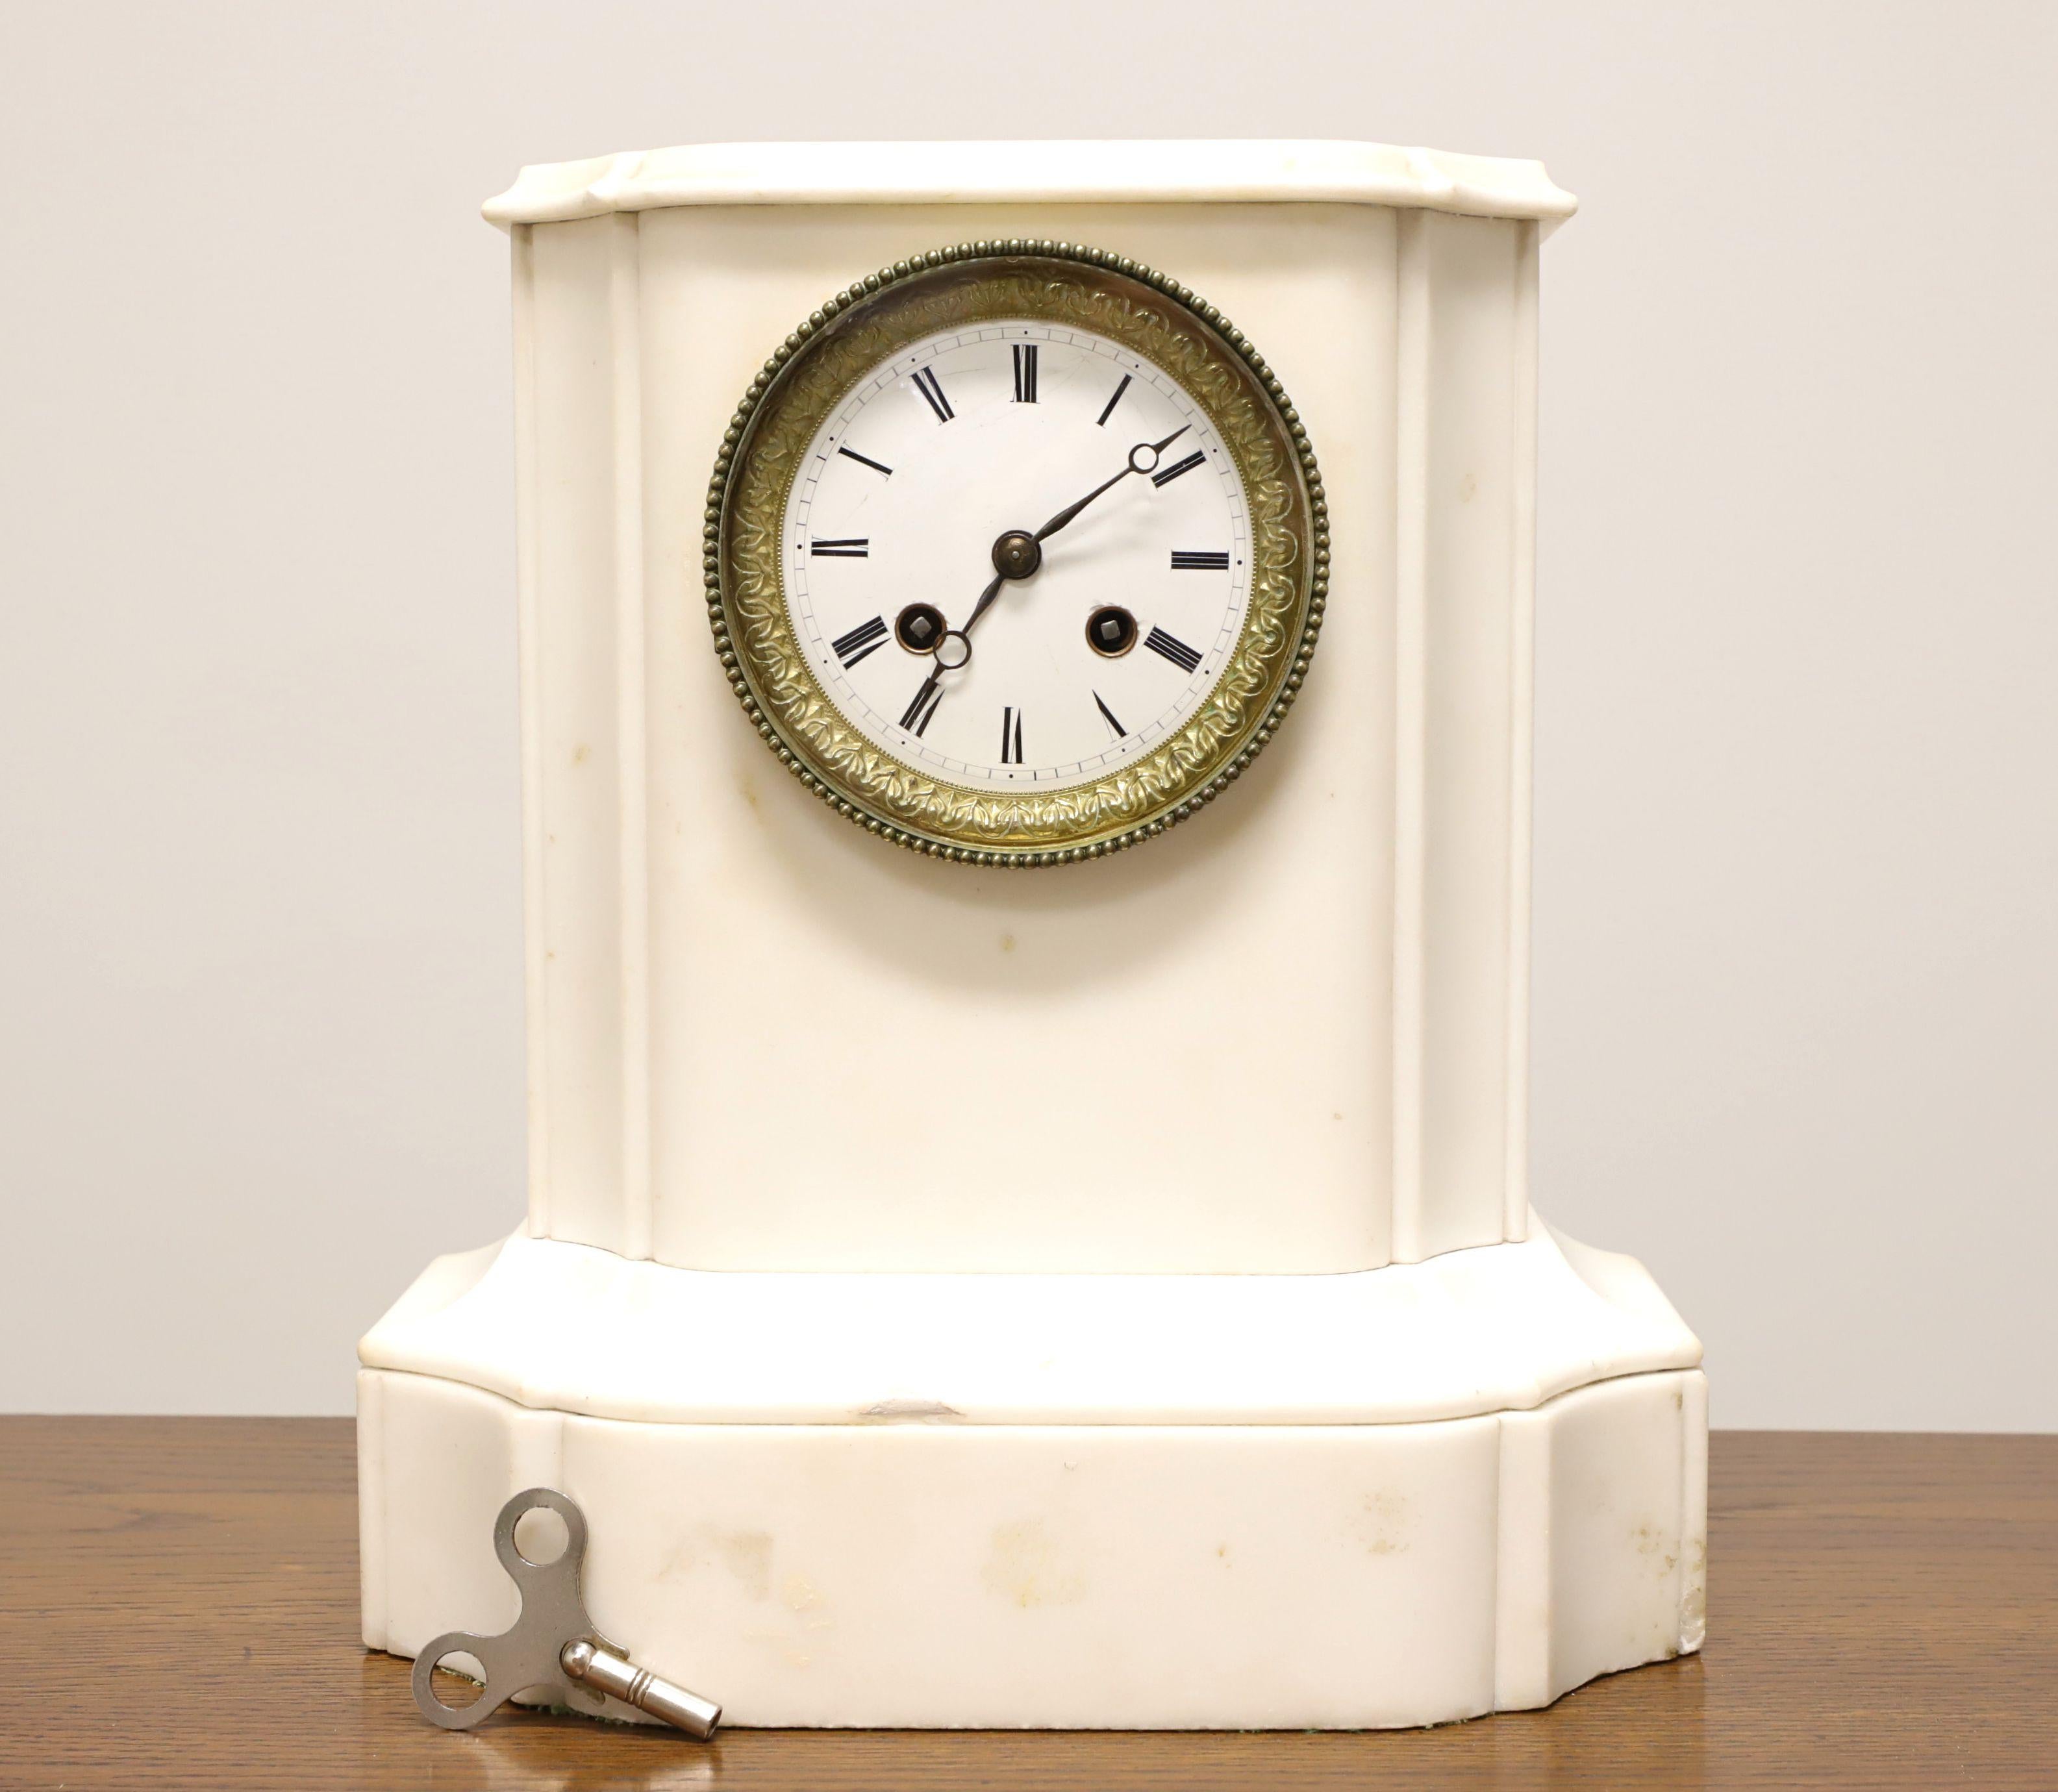 Pendule de cheminée ancienne de style Empire à carillon de marbre, sans marque. Marbre blanc entourant le mécanisme de l'horloge. Le cadran de l'horloge, rond et décoratif, est recouvert de laiton et de verre. Les heures sont marquées par des